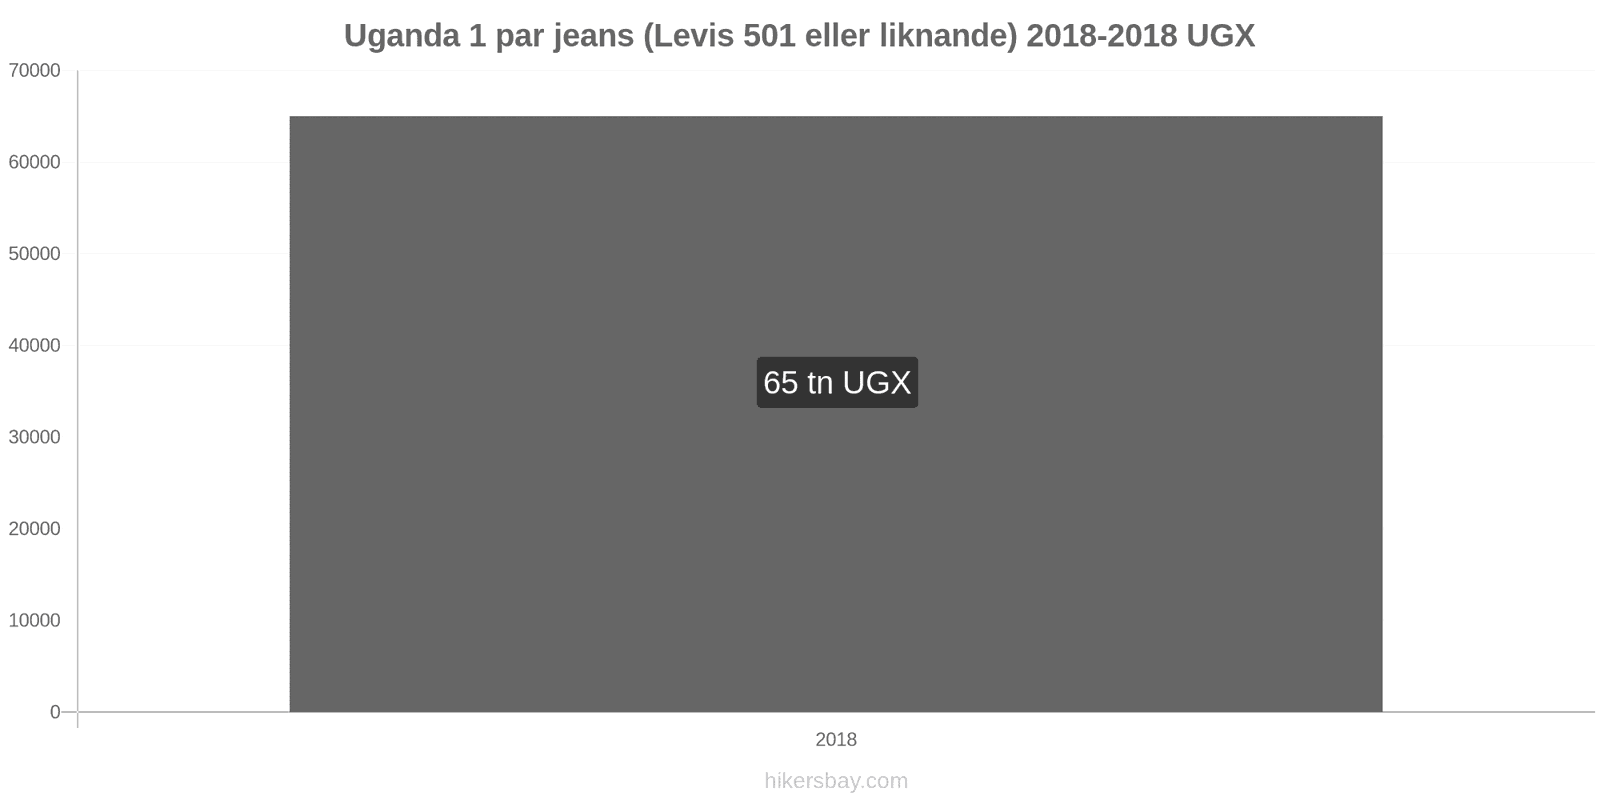 Uganda prisändringar 1 par jeans (Levis 501 eller liknande) hikersbay.com